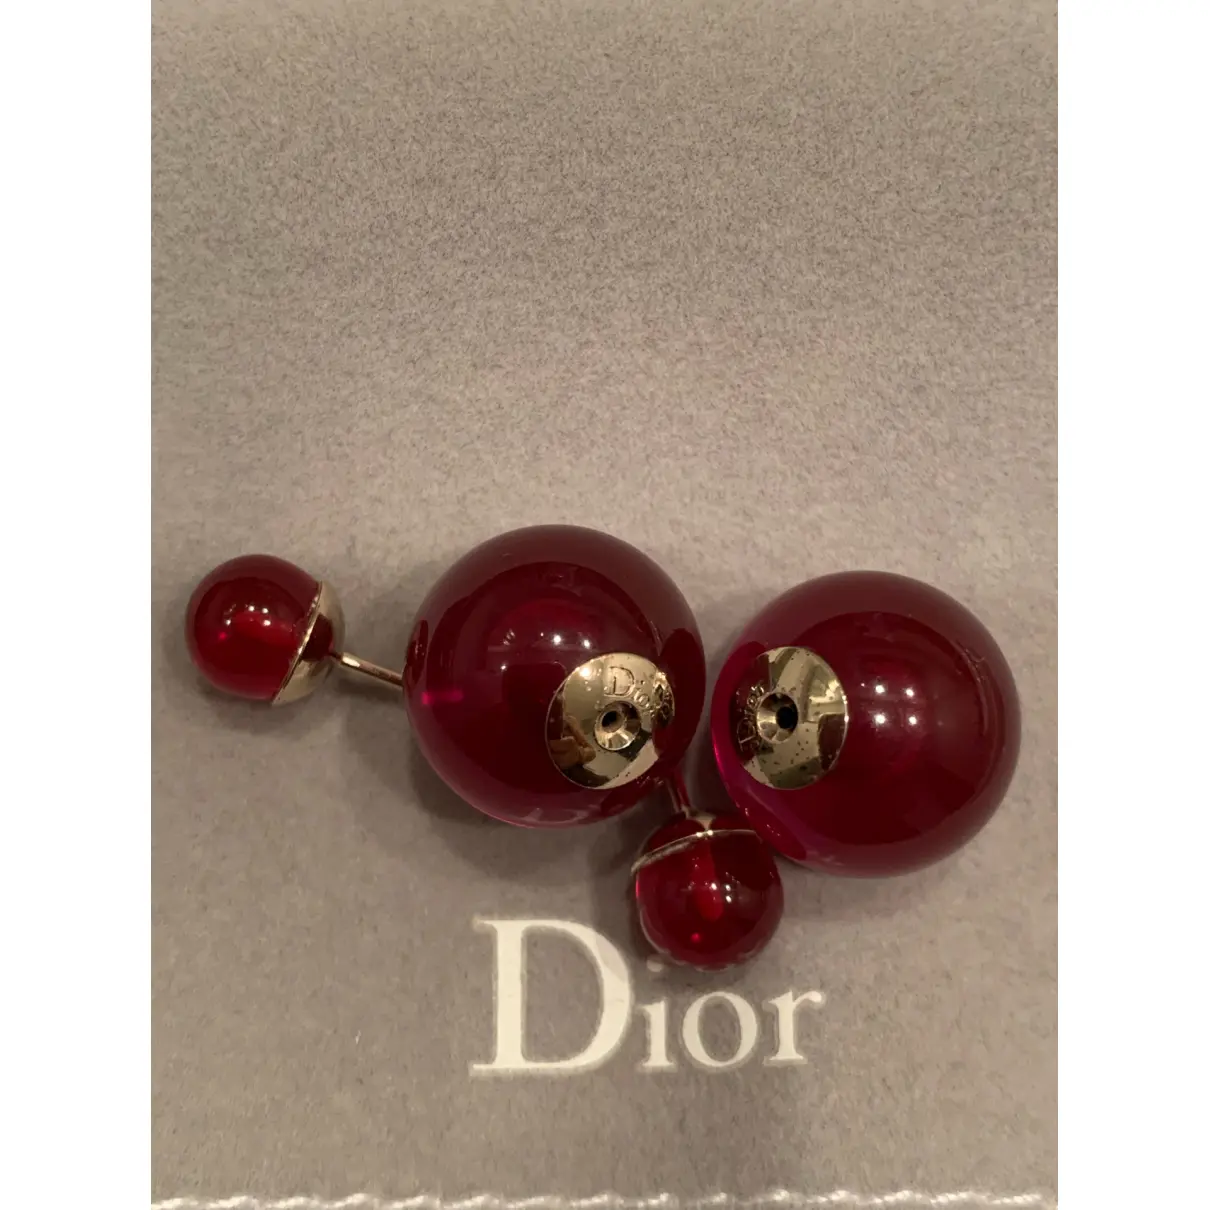 Buy Dior Tribal earrings online